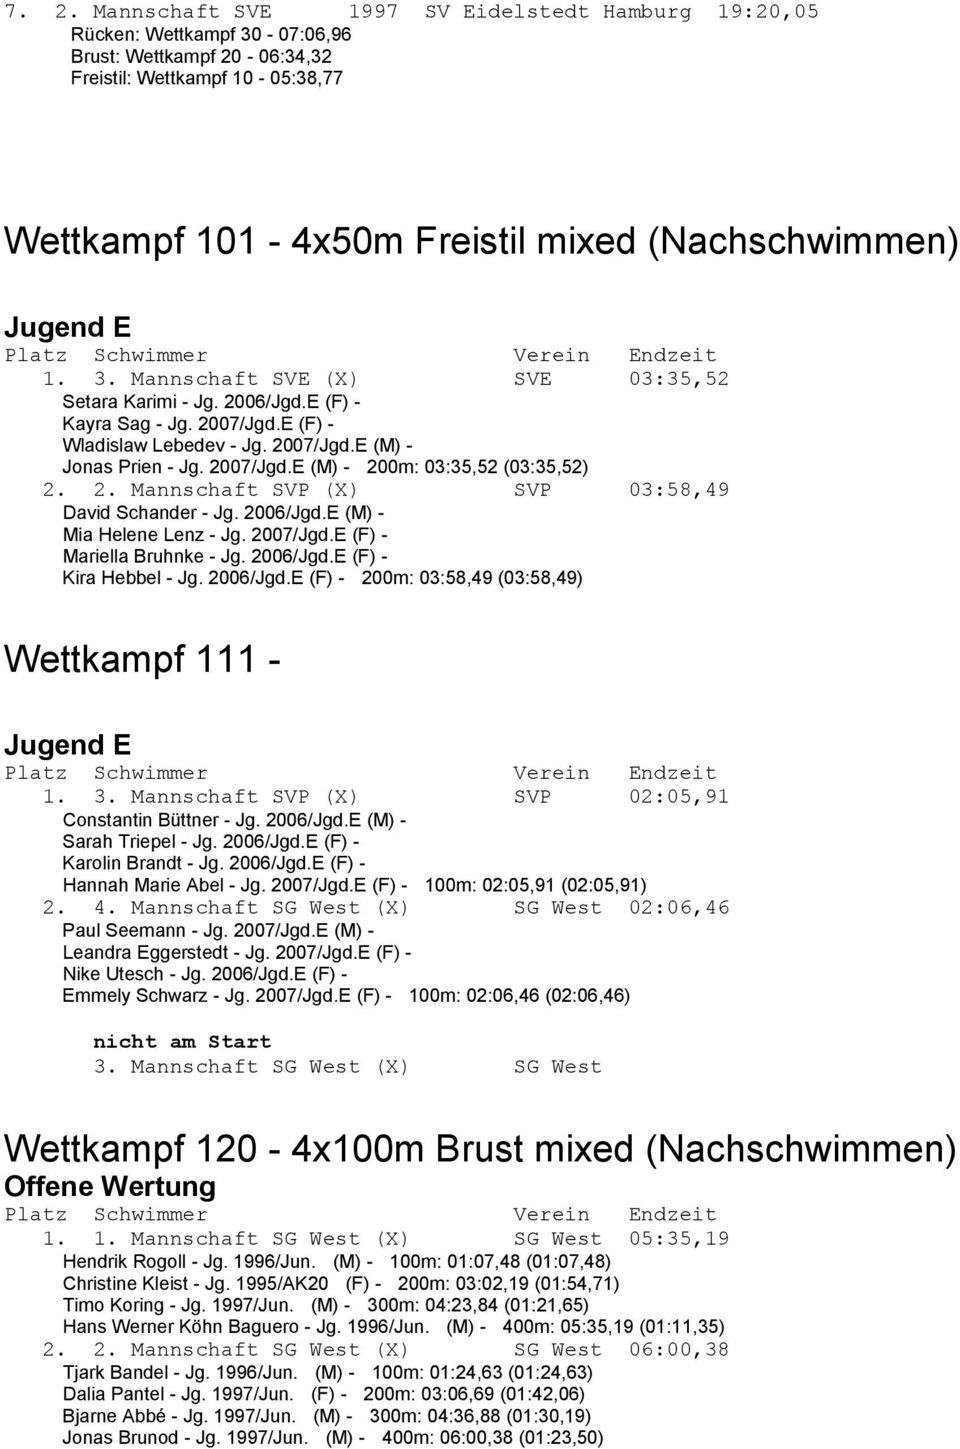 2. Mannschaft SVP (X) SVP 03:58,49 David Schander - Jg. 2006/Jgd.E (M) - Mia Helene Lenz - Jg. 2007/Jgd.E (F) - Mariella Bruhnke - Jg. 2006/Jgd.E (F) - Kira Hebbel - Jg. 2006/Jgd.E (F) - 200m: 03:58,49 (03:58,49) Wettkampf 111 - Jugend E 1.